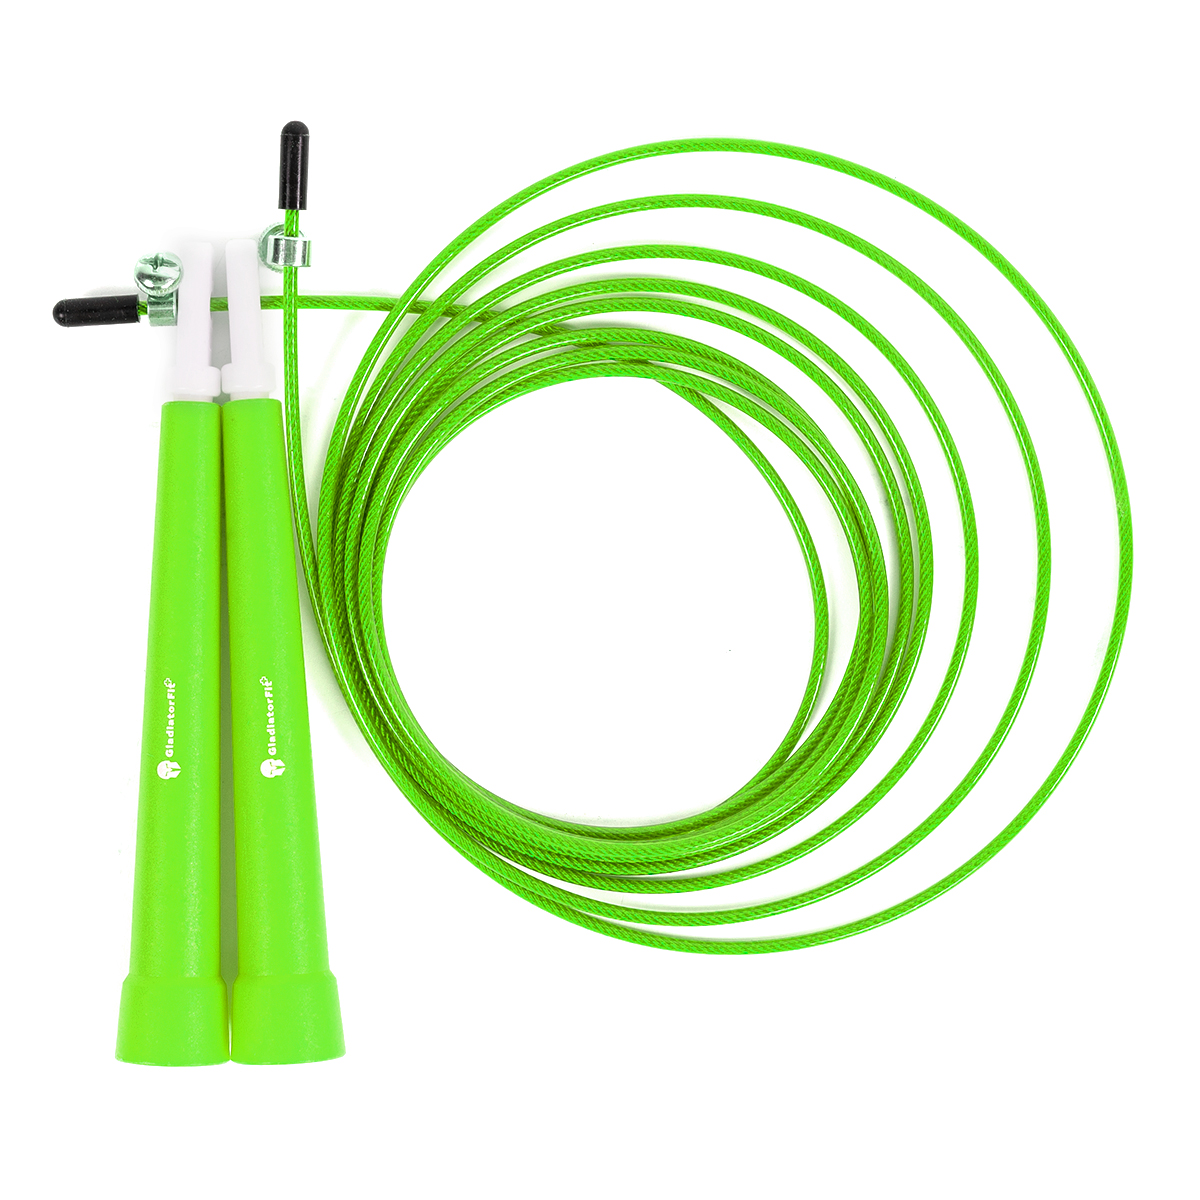 Cuerda De Saltar De Plástico 180cm Ajustable Con  Bolsa Gladiatorfit - verde - 